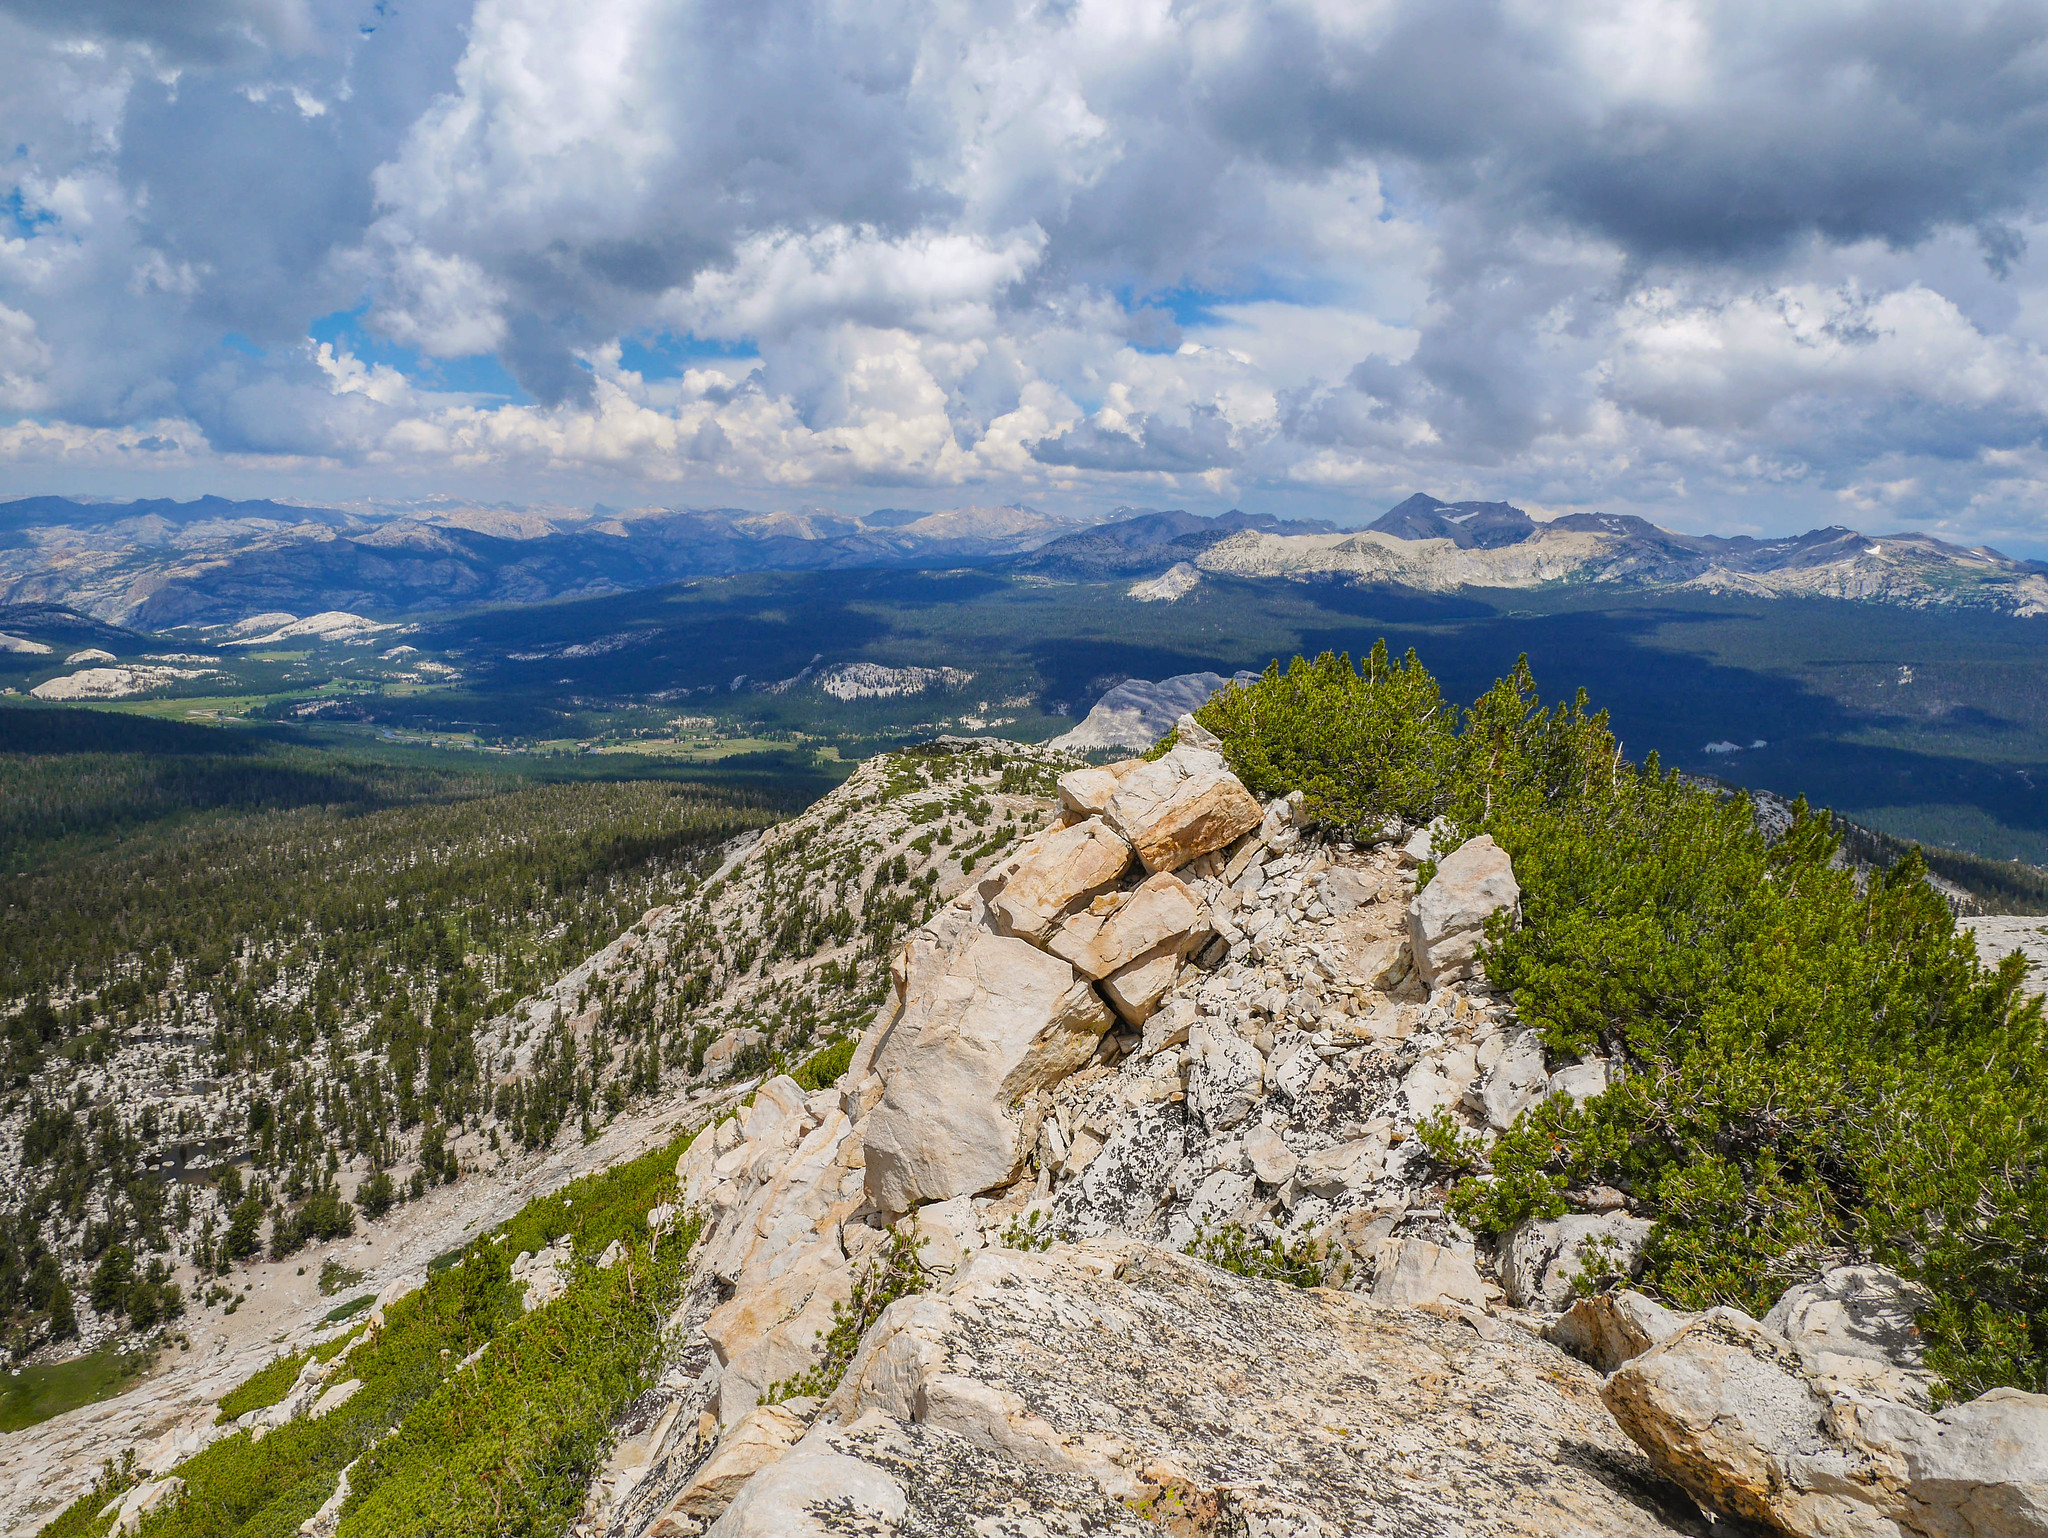 View from Johnson Peak